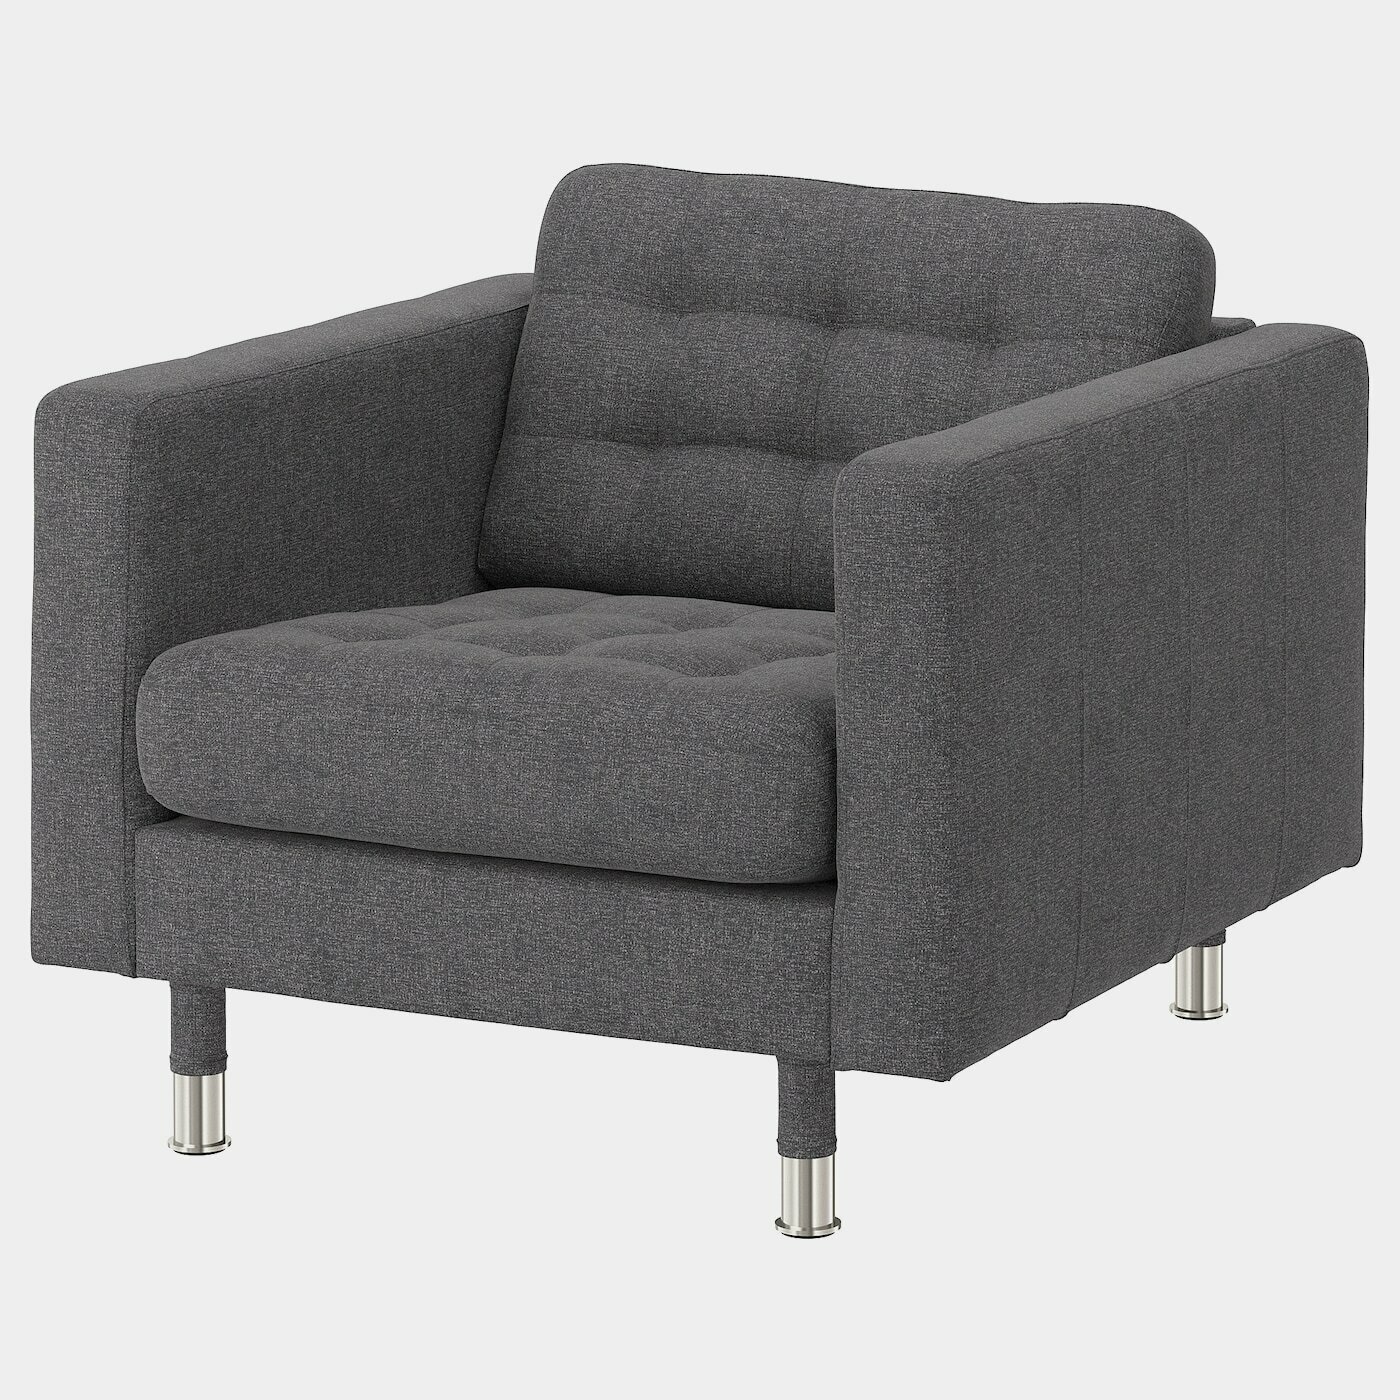 LANDSKRONA Sessel  - Sessel & Récamieren - Möbel Ideen für dein Zuhause von Home Trends. Möbel Trends von Social Media Influencer für dein Skandi Zuhause.